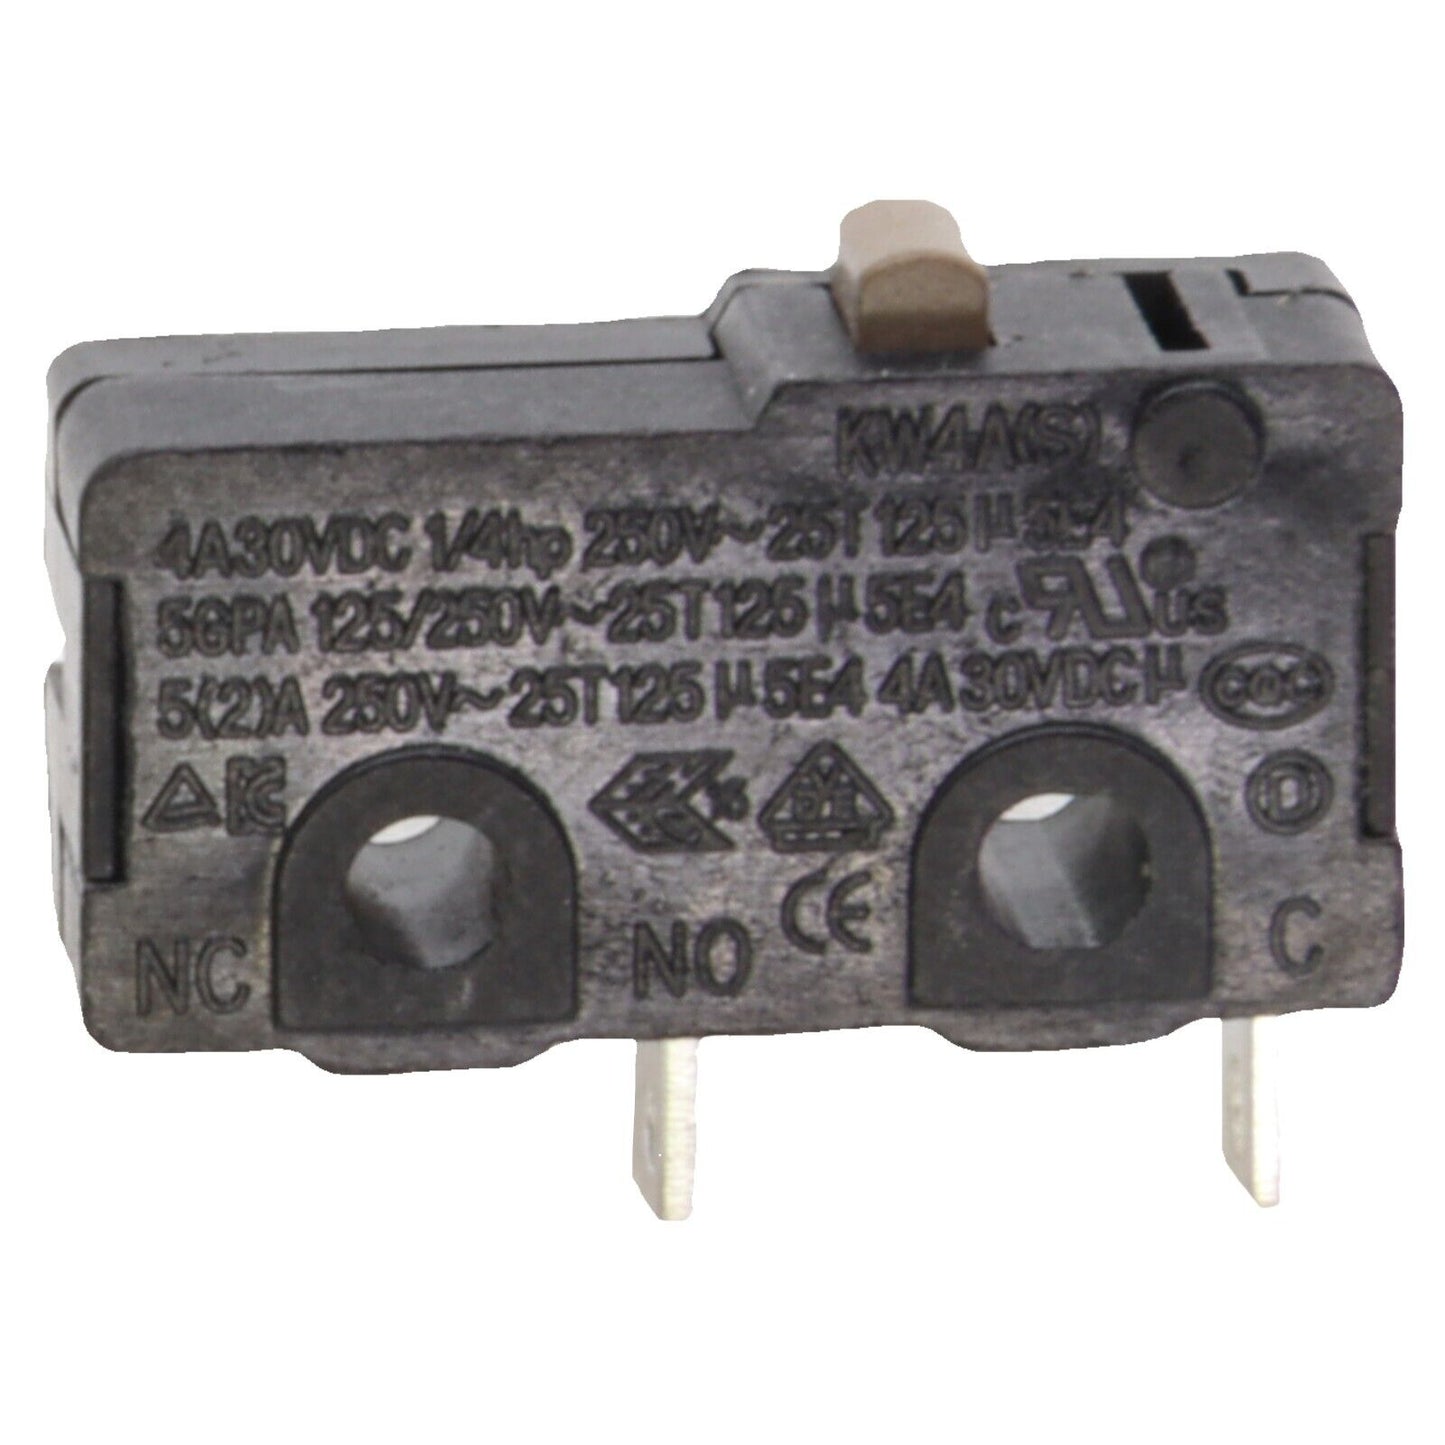 Polti micro interruttore KW4A(S) Vaporetto Cimex Sani System Gun Disinfector